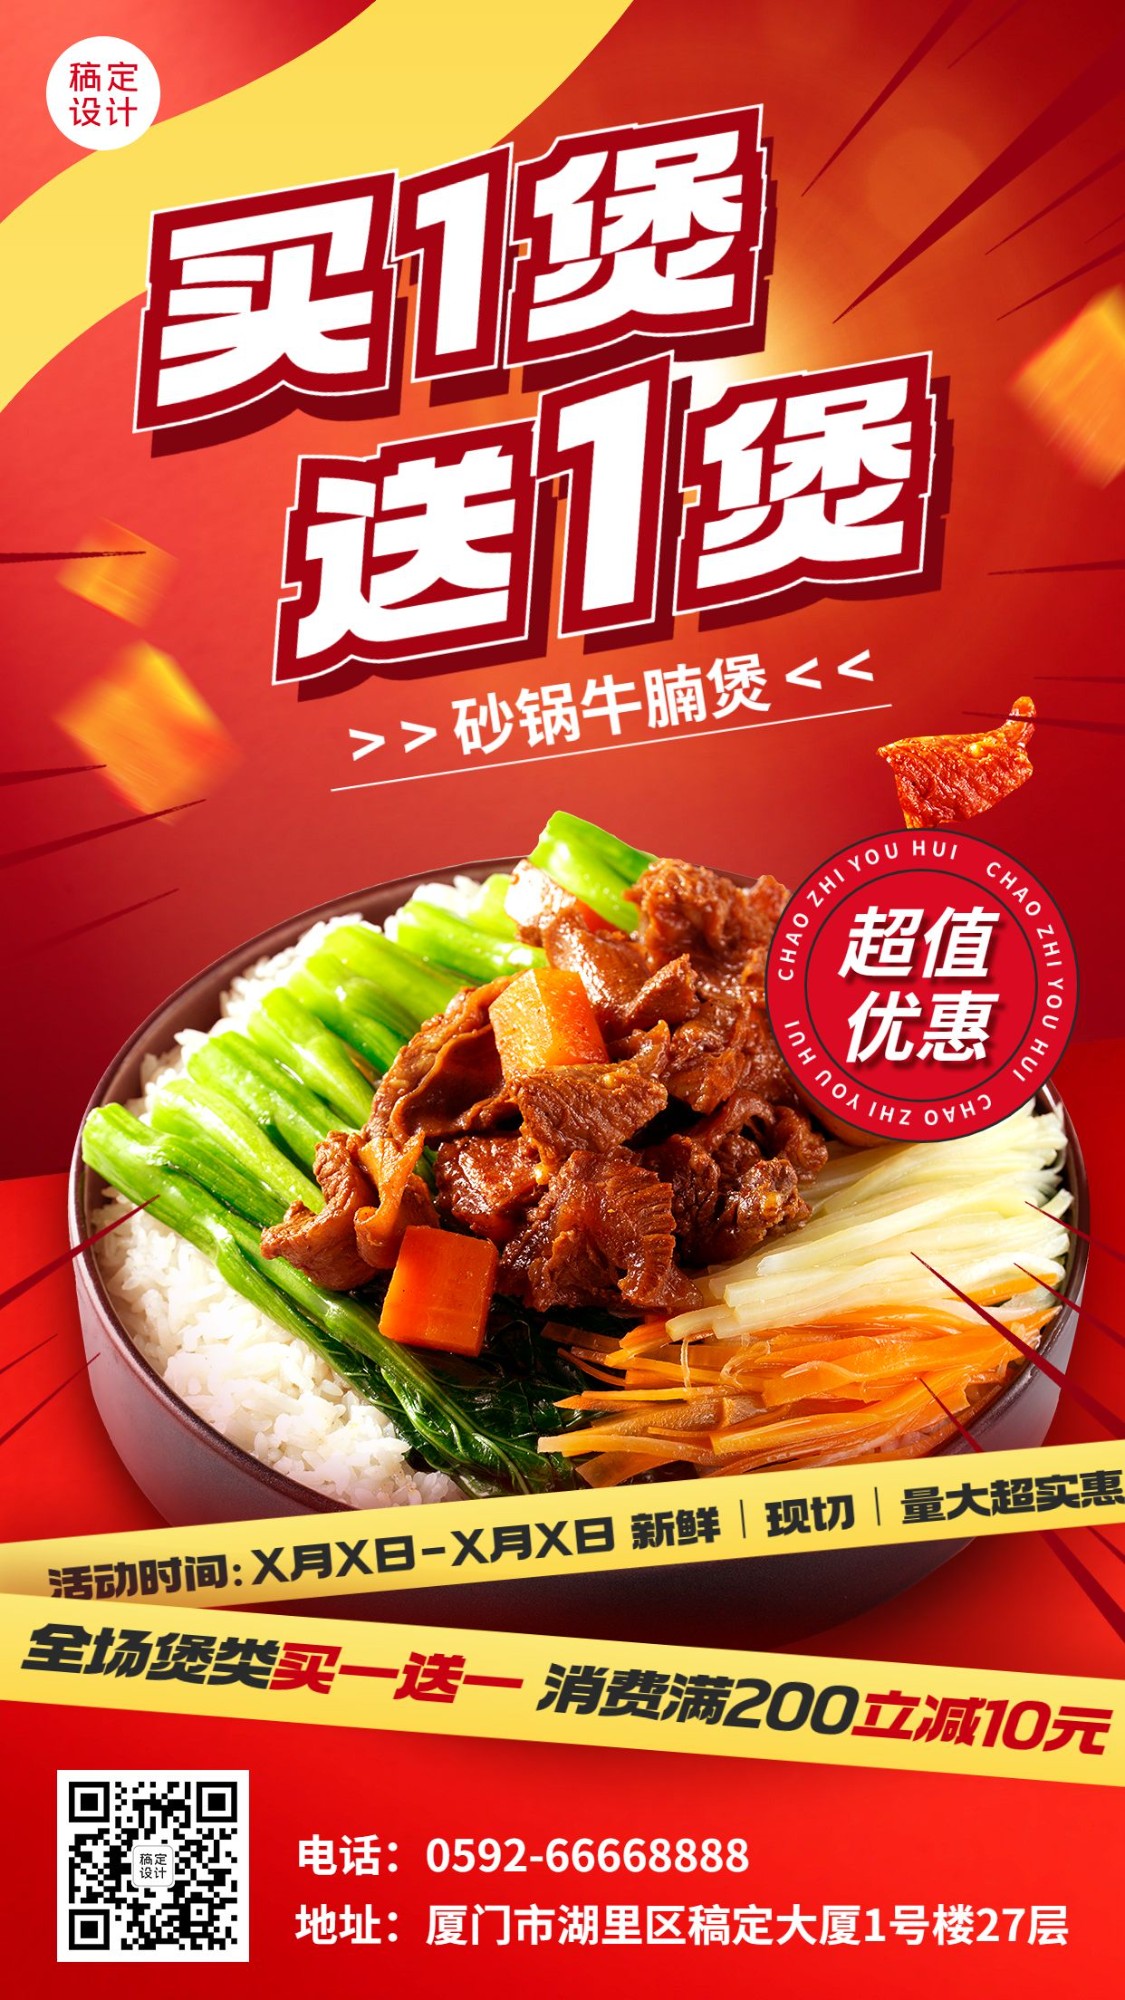 餐饮煲类焖锅产品营销手机海报预览效果